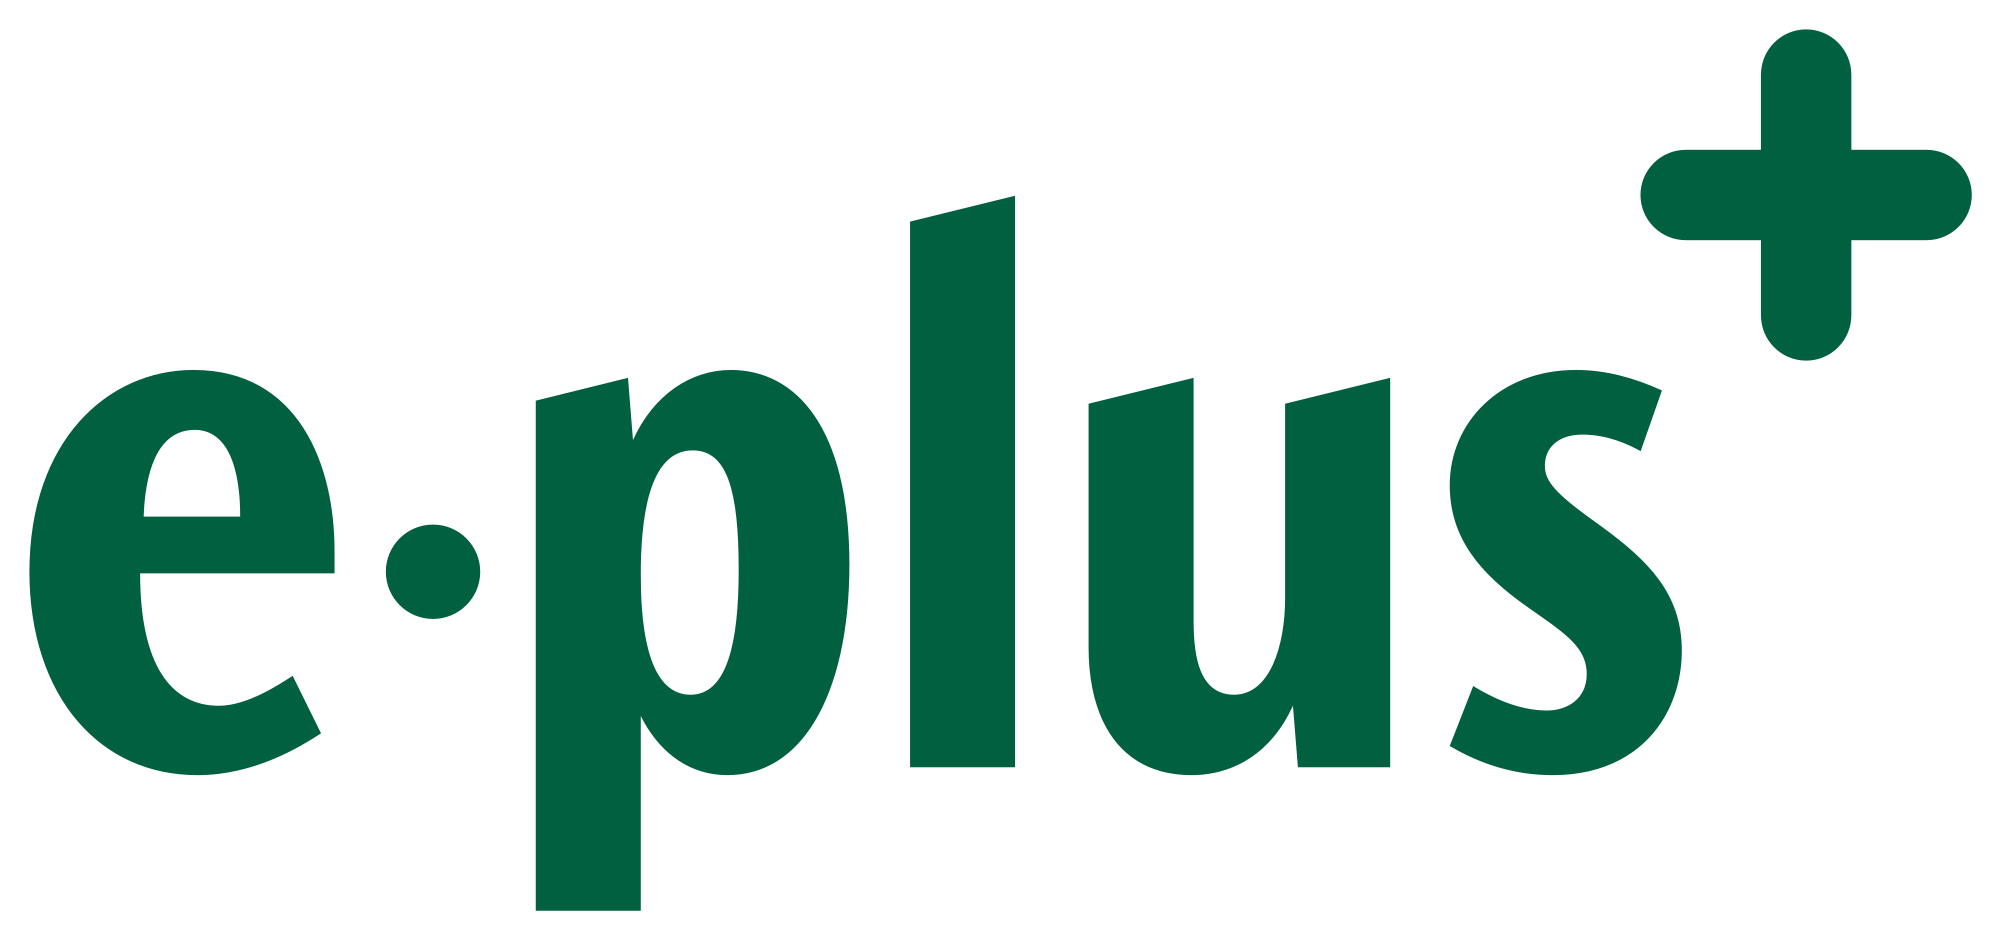 File:GooglePlus-logo-red.png